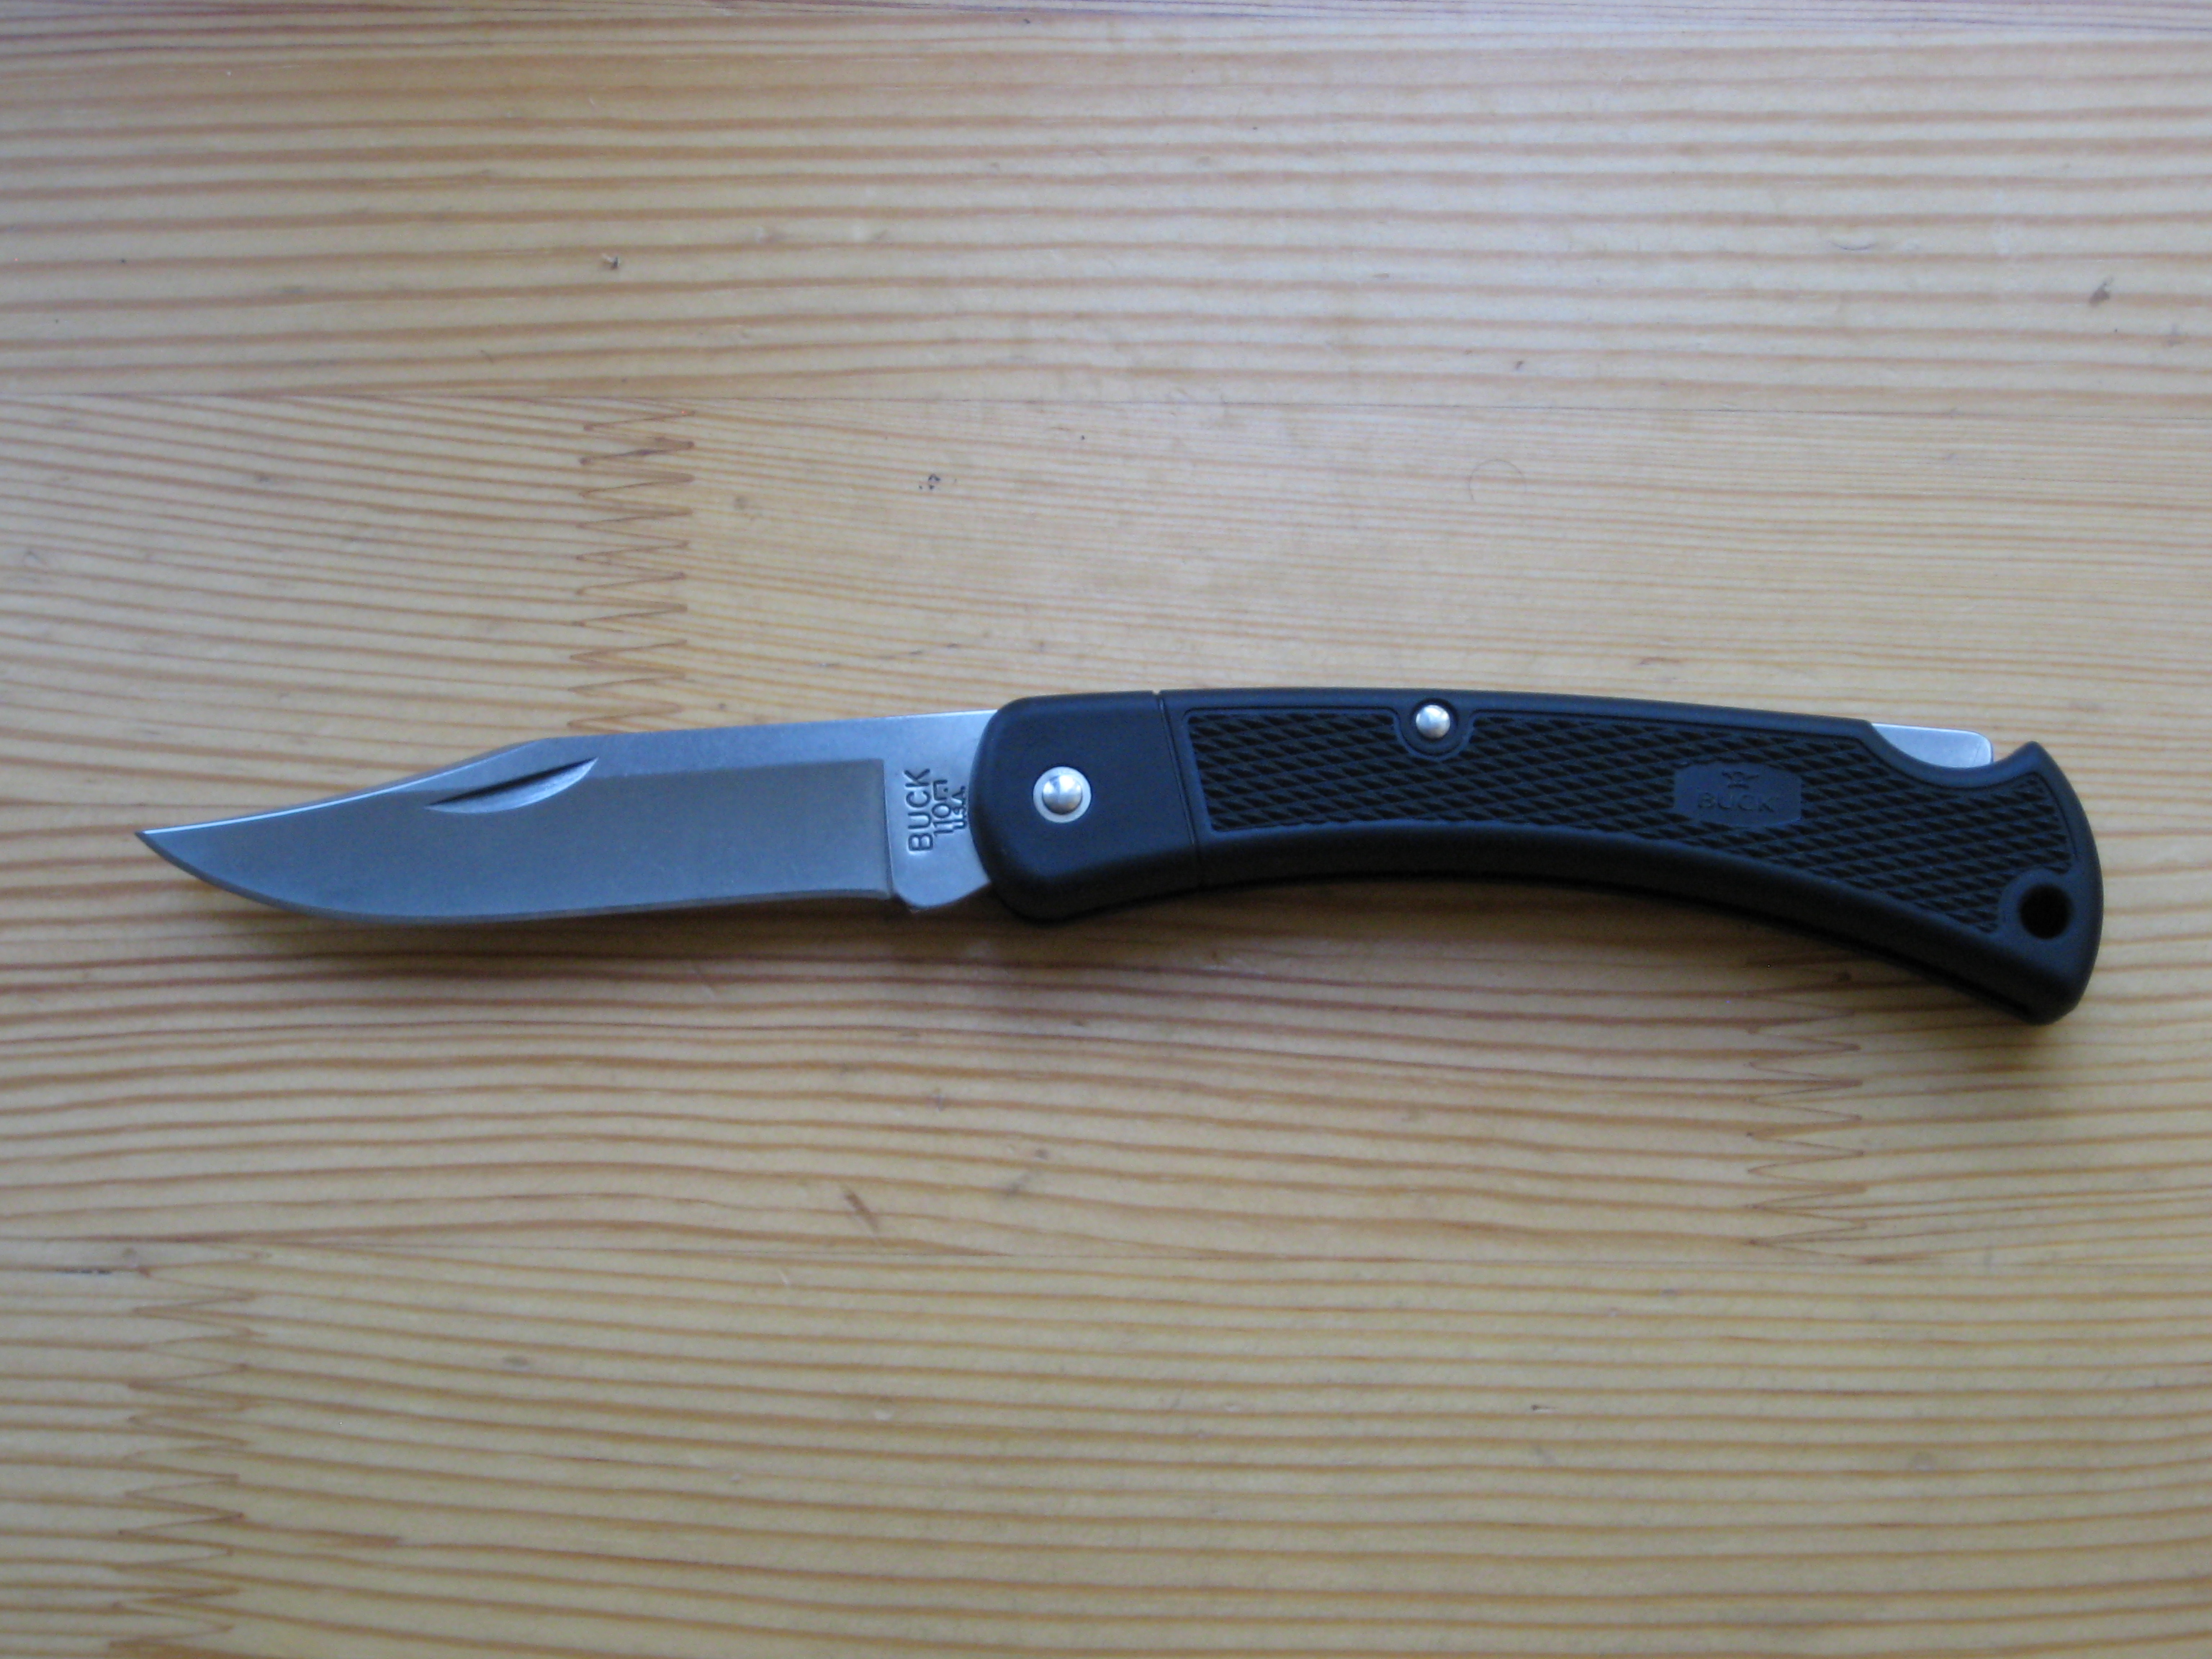 Как я могу крепить магнитный держатель ножа? – santokuknives